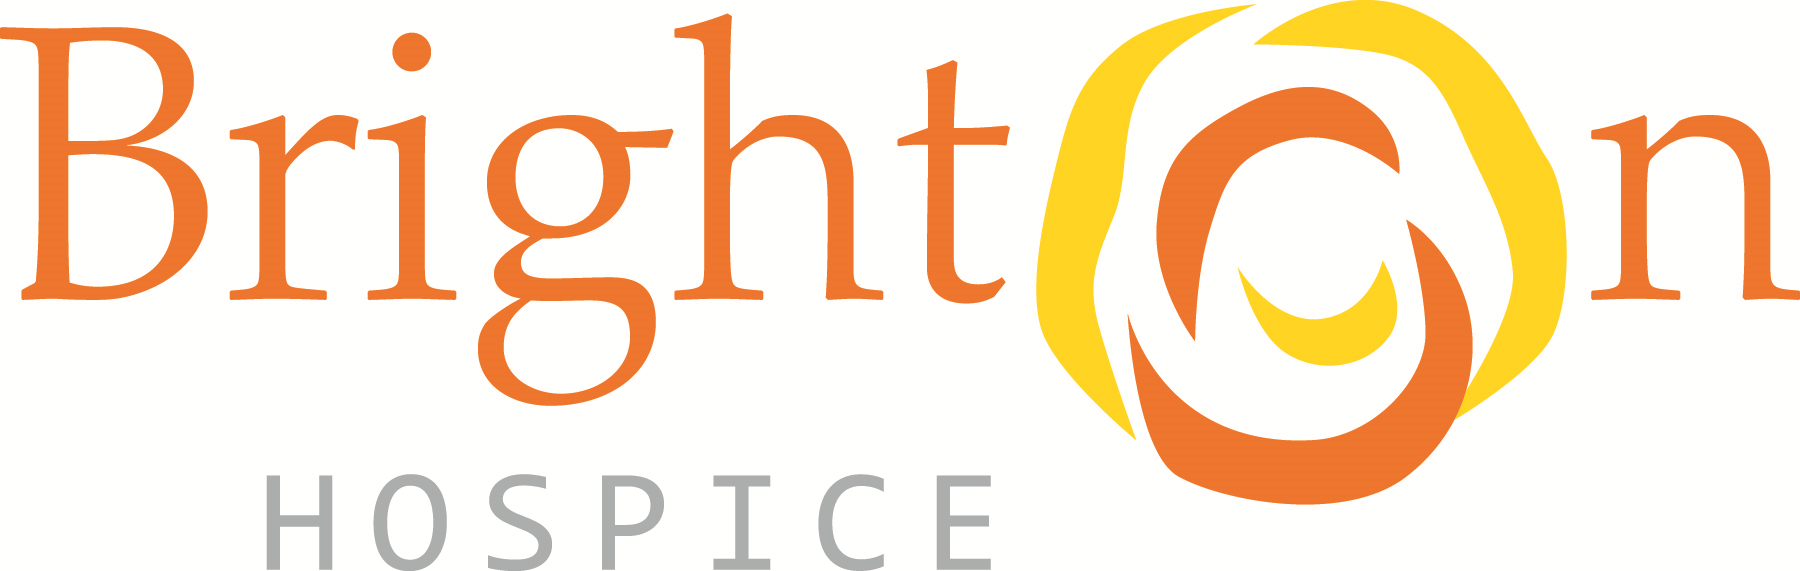 Brighton Hospice Indiana LLC Company Logo